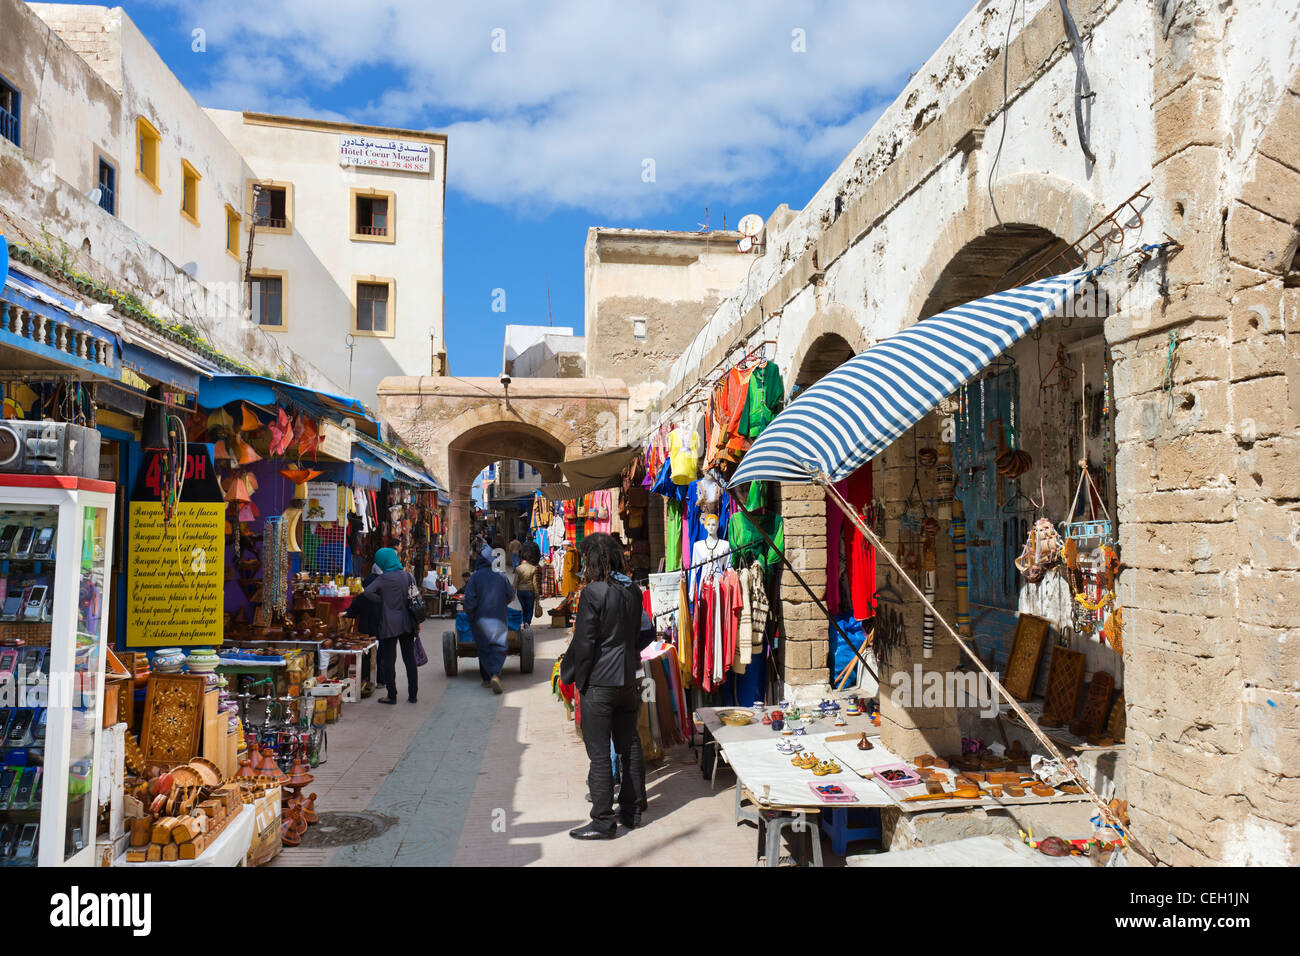 Geschäfte und Stände in der Medina, Essaouira, Marokko, Nordafrika Stockfoto